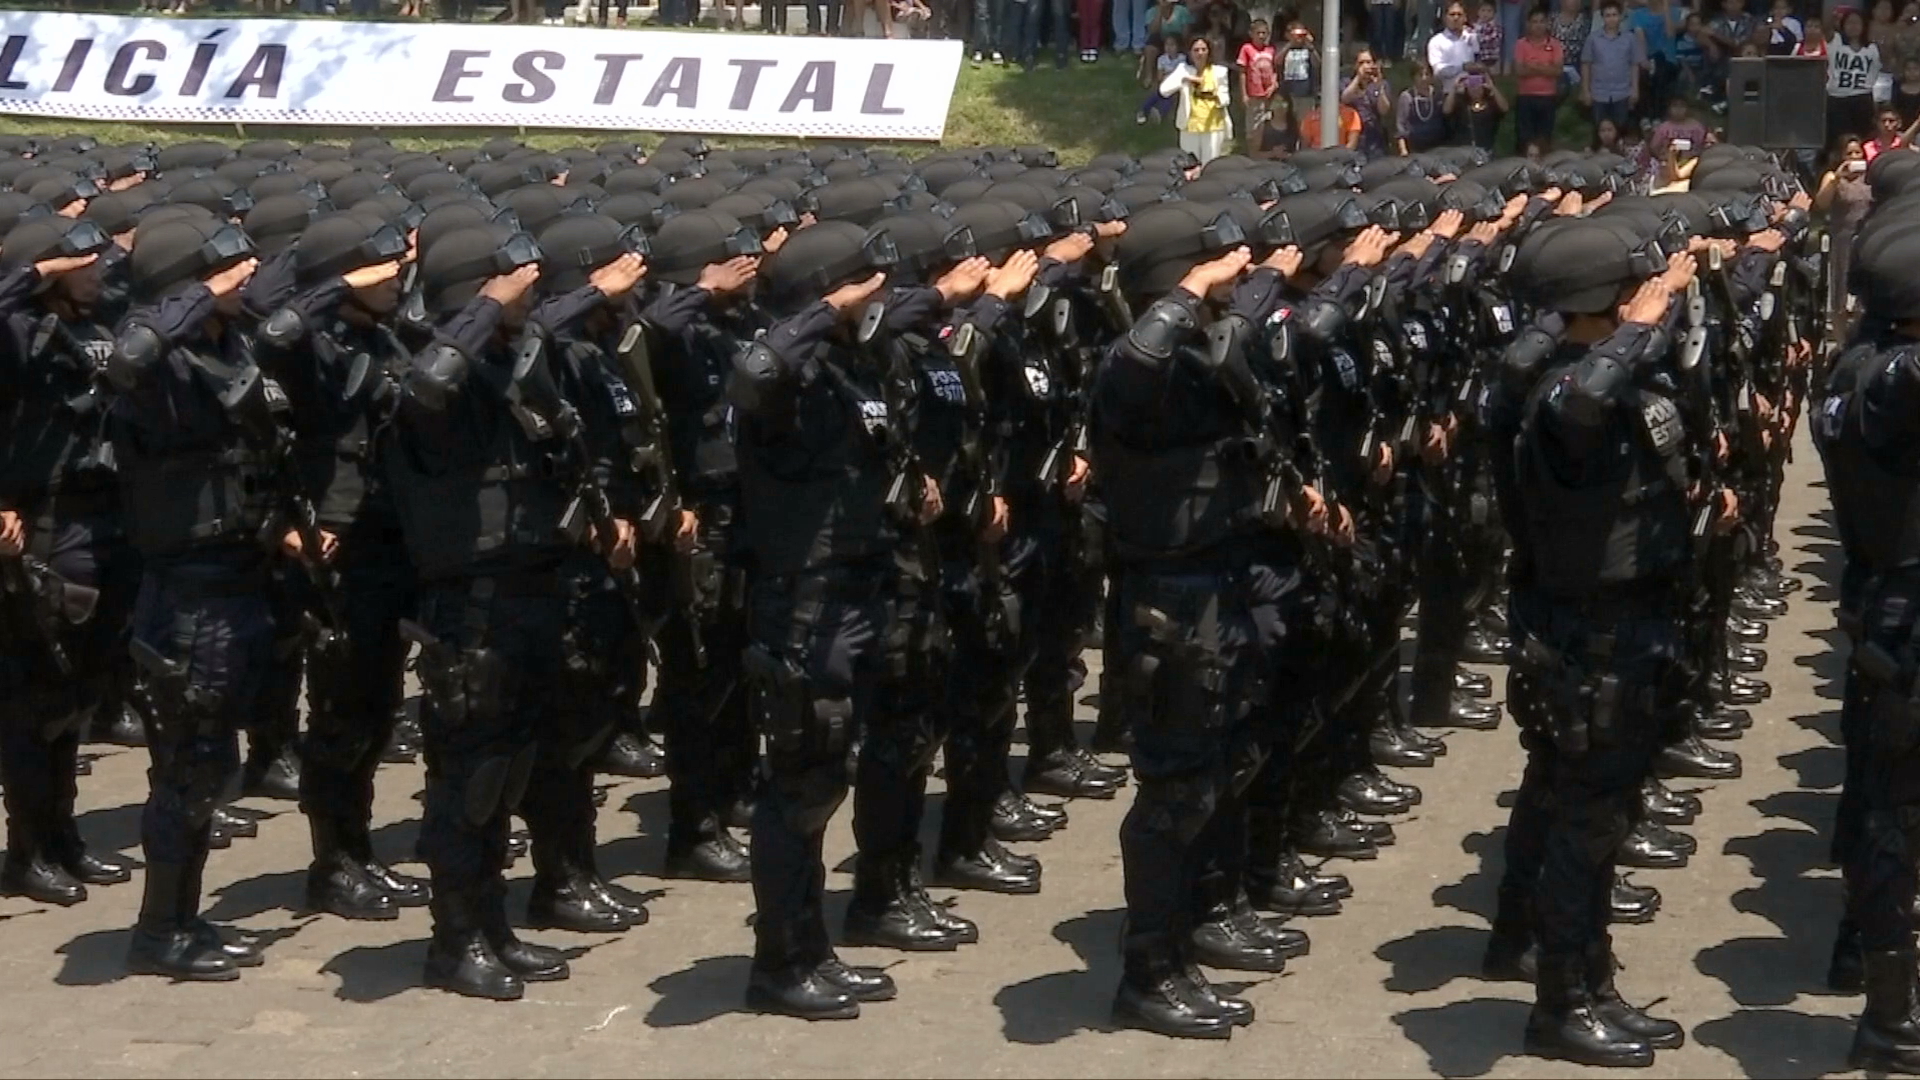 Destaca Veracruz en evaluación del 100% de sus policías y en depuración de malos elementos